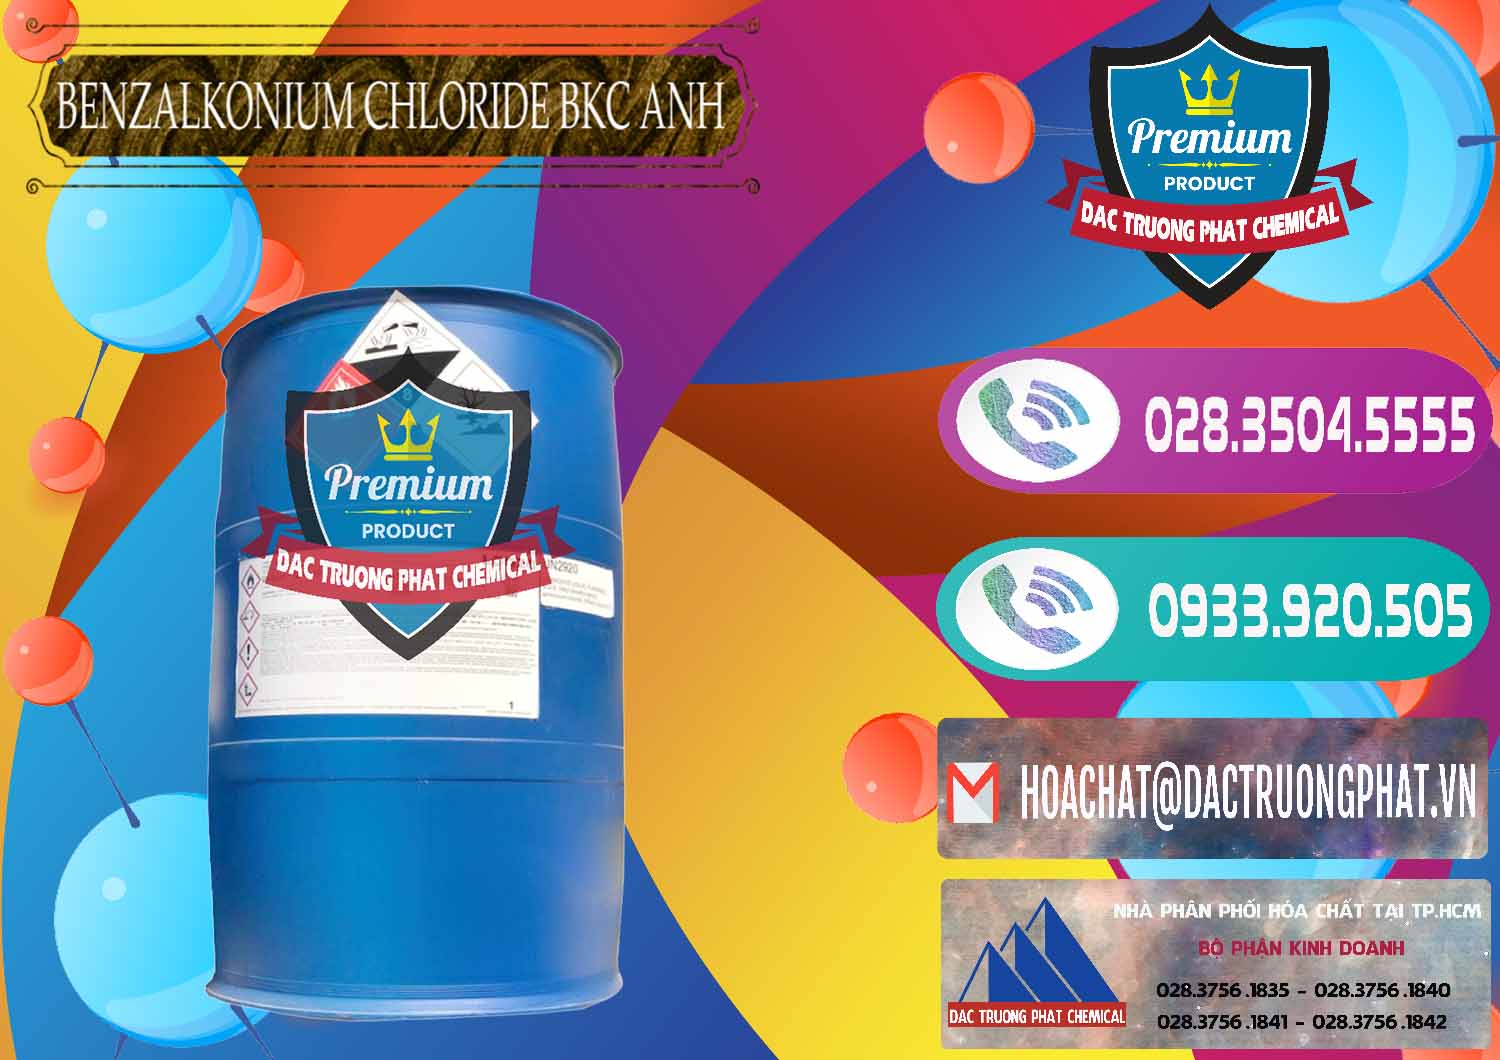 Nhà cung cấp - bán BKC - Benzalkonium Chloride 80% Anh Quốc Uk Kingdoms - 0457 - Cty chuyên kinh doanh ( phân phối ) hóa chất tại TP.HCM - hoachatxulynuoc.com